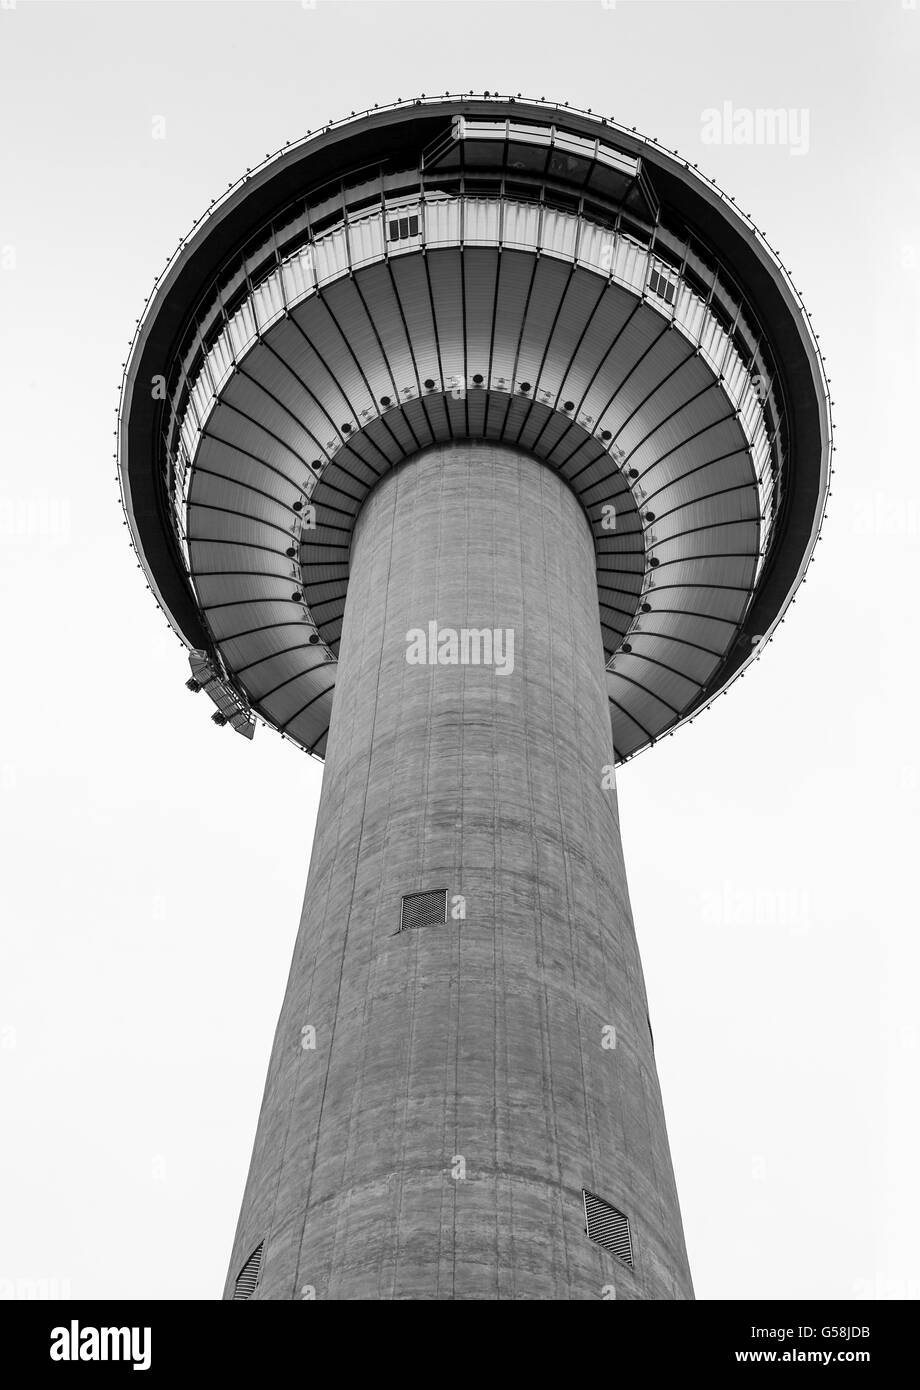 Schwarz / weiß Darstellung der Calgary Tower, einer der bekanntesten Symbol Kanadas im Jahr 1968 gebaut. Stockfoto